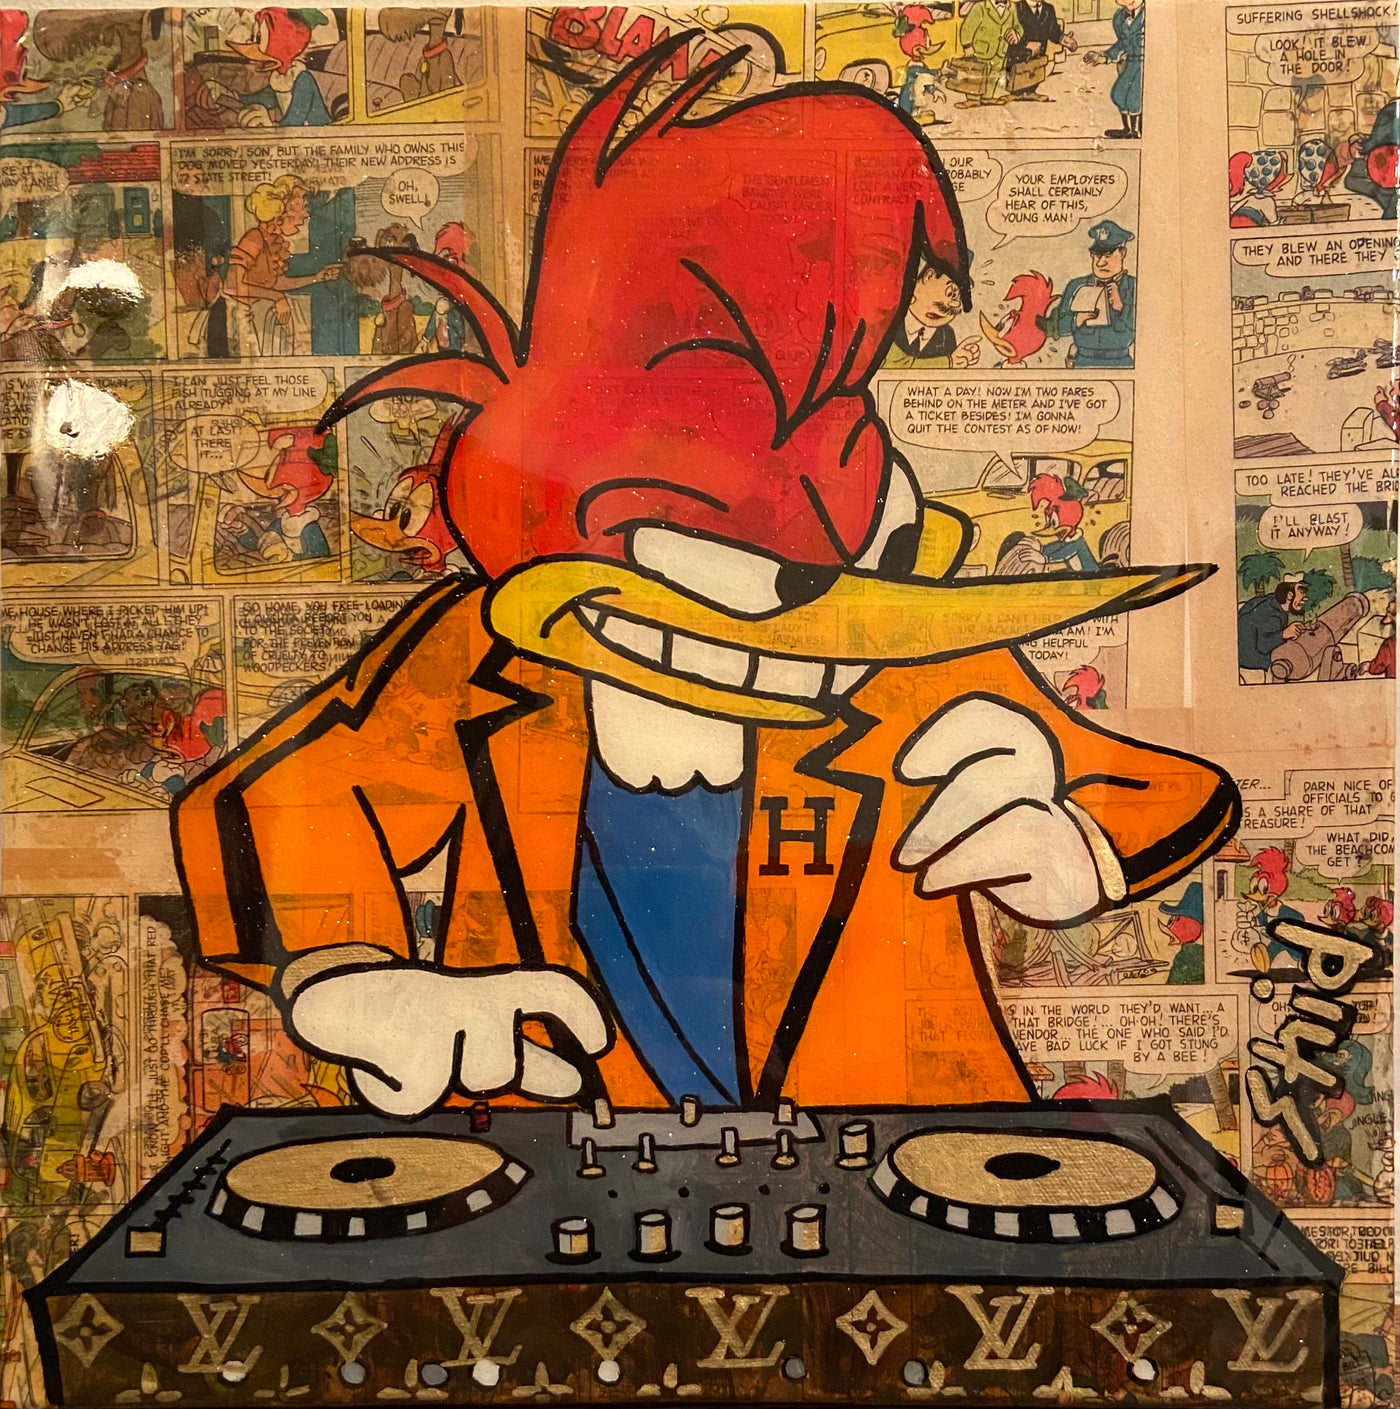 DJ Woody